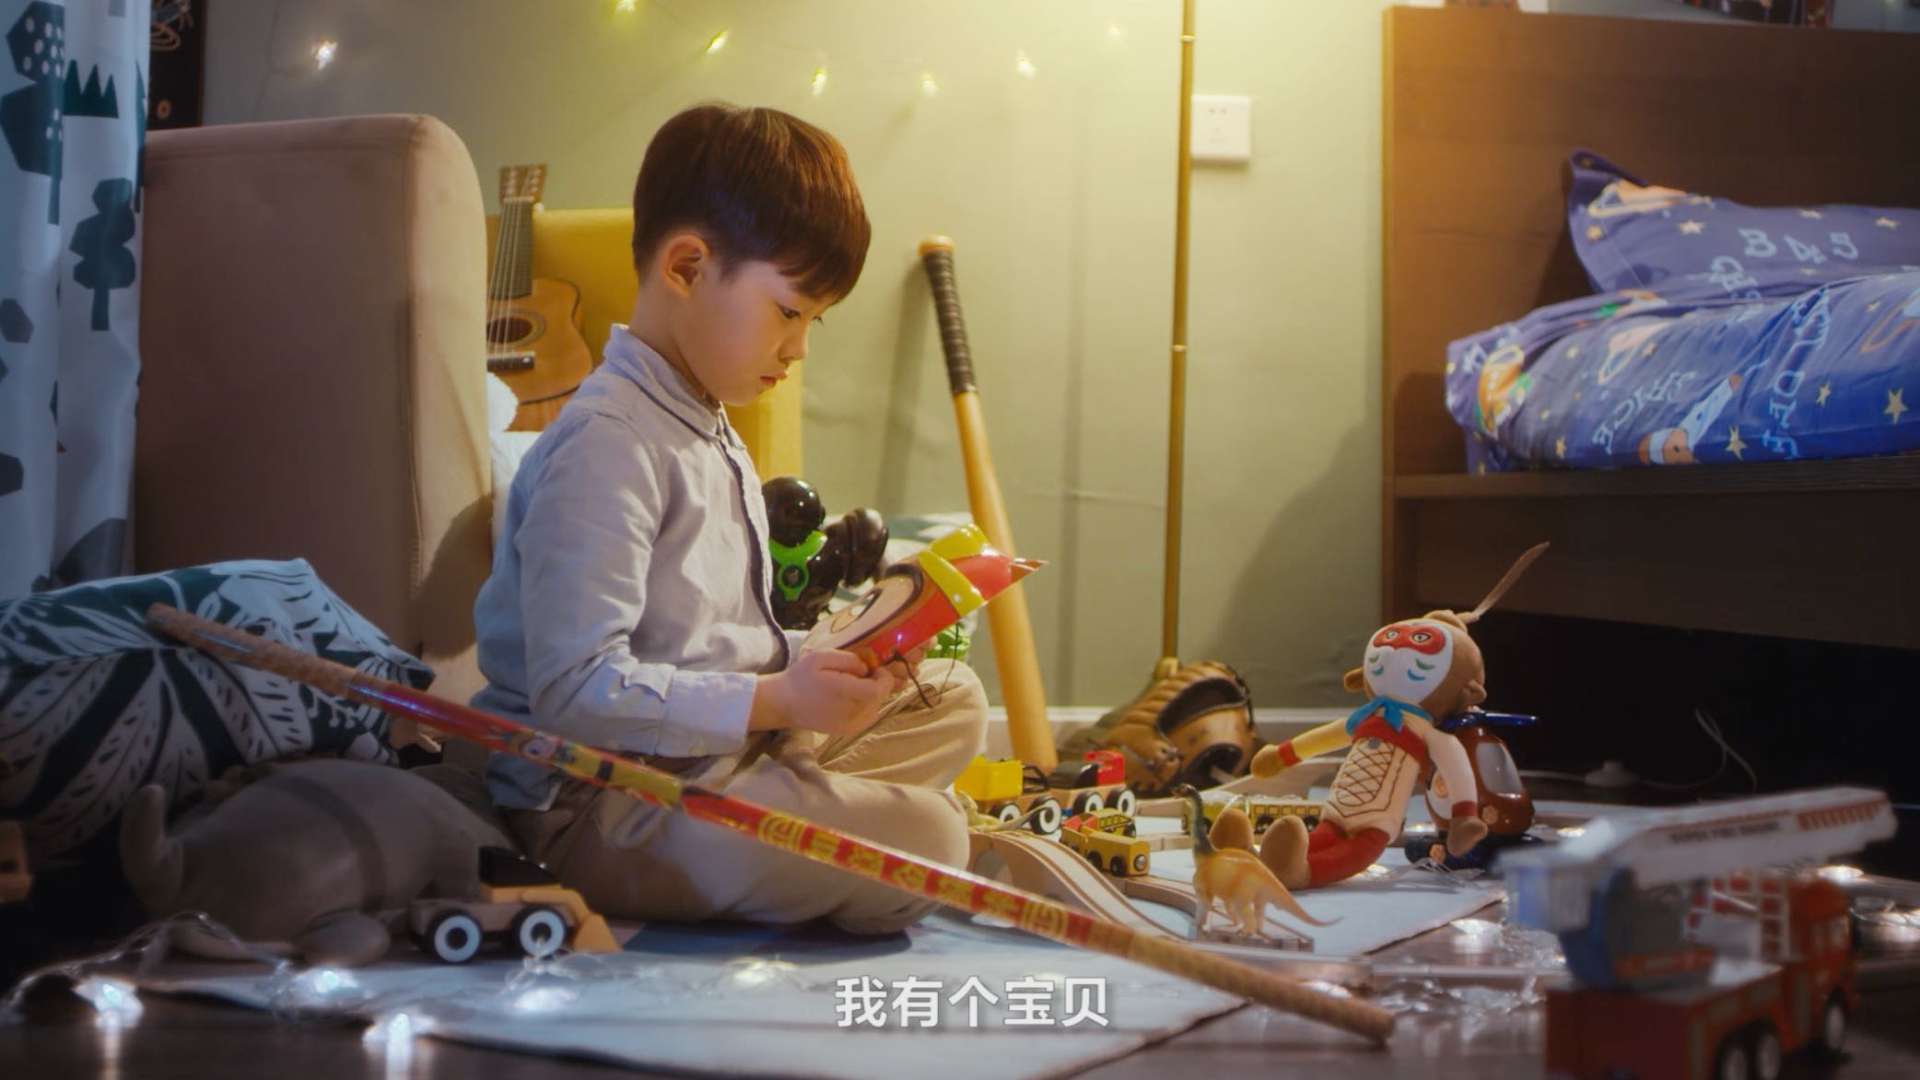 温情广告《我家有个宝贝》| 中国电信